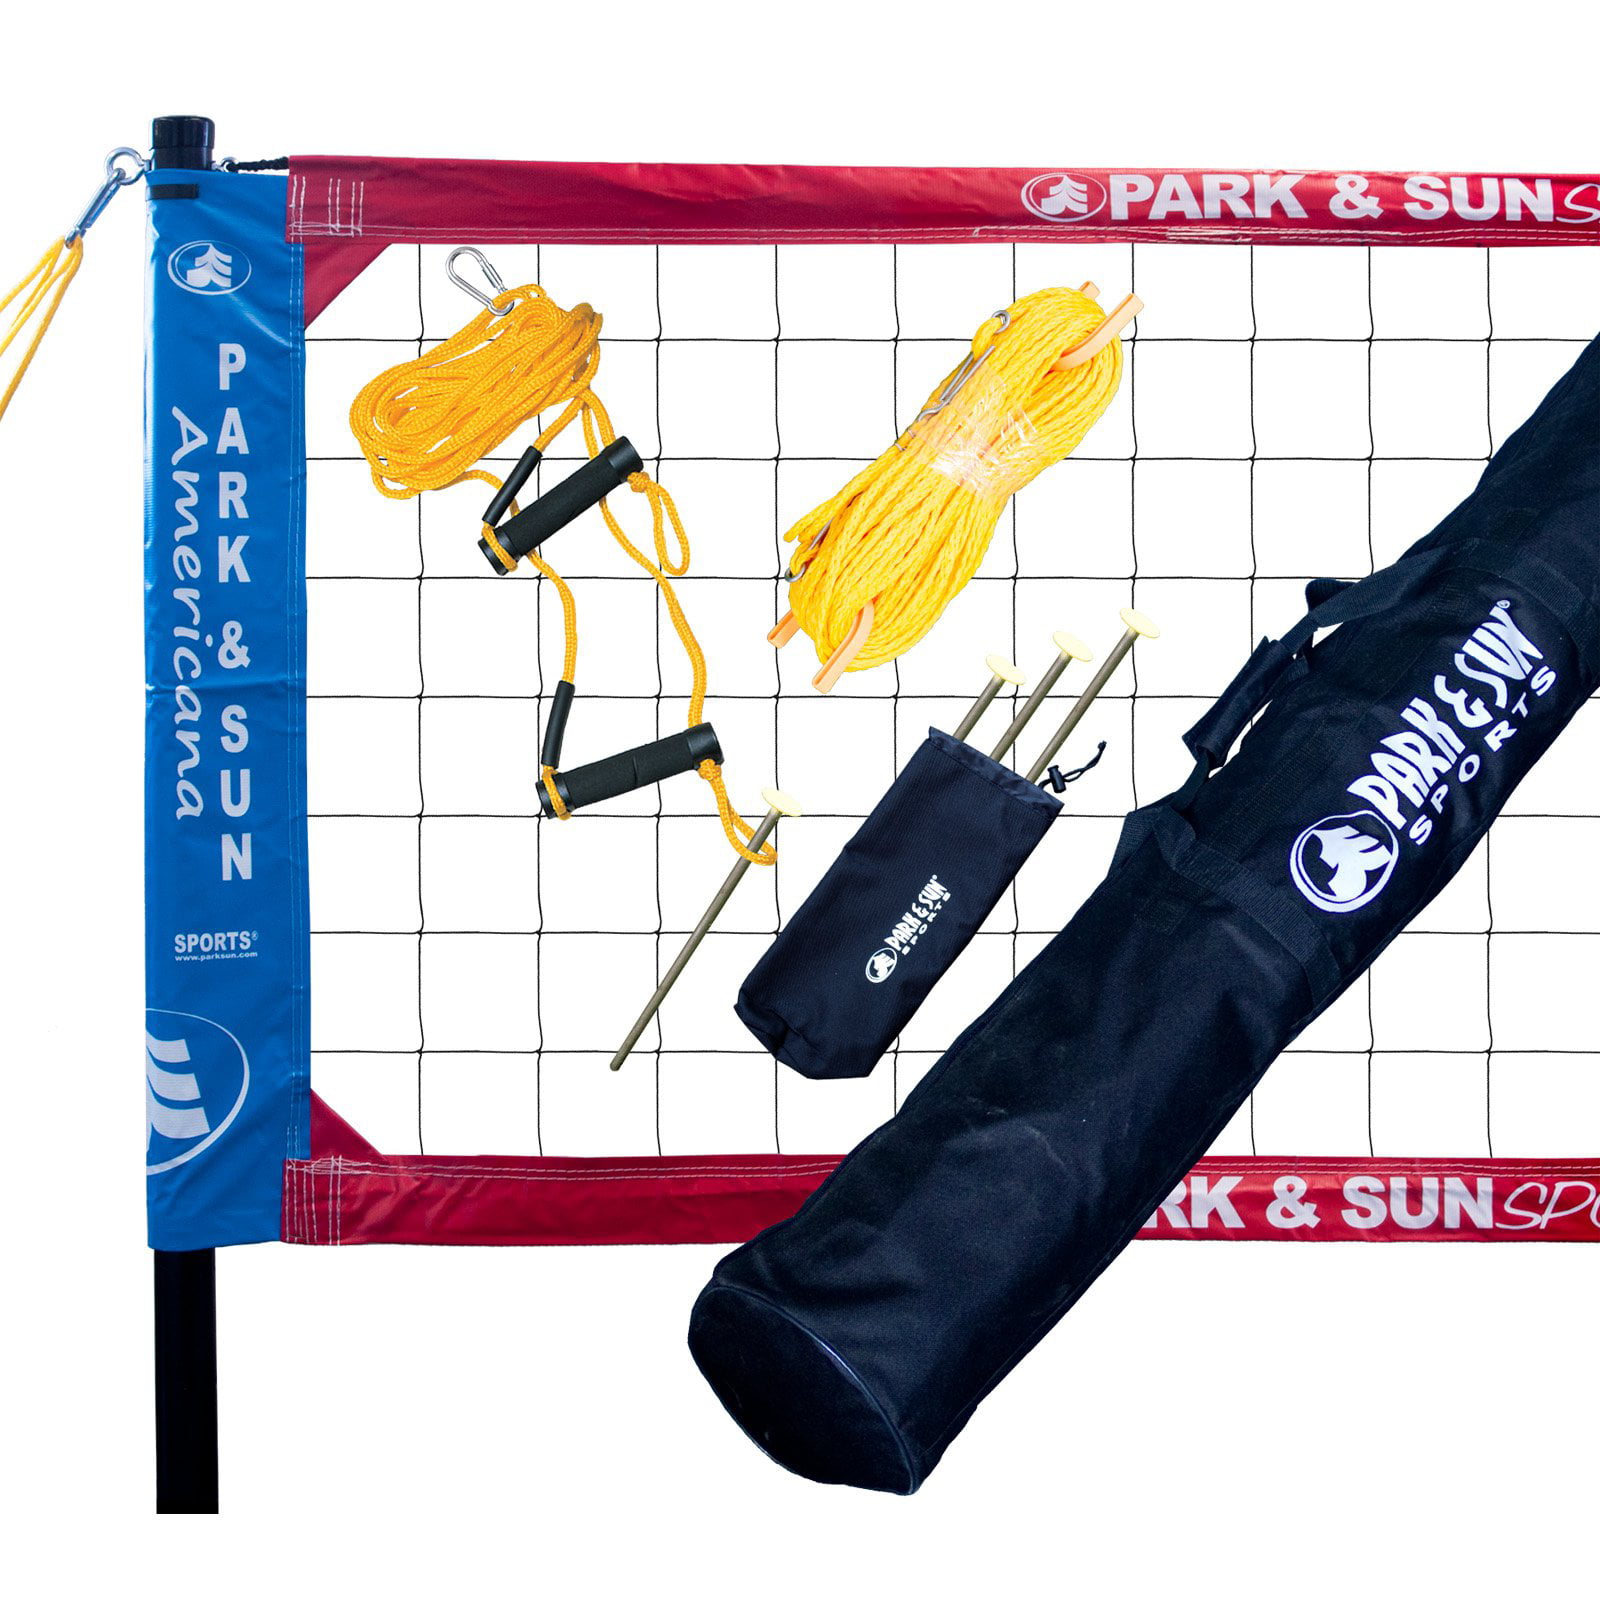 Blue Park & Sun Sports Tournament Flex 1000 Portable Outdoor Volleyball Net Set 